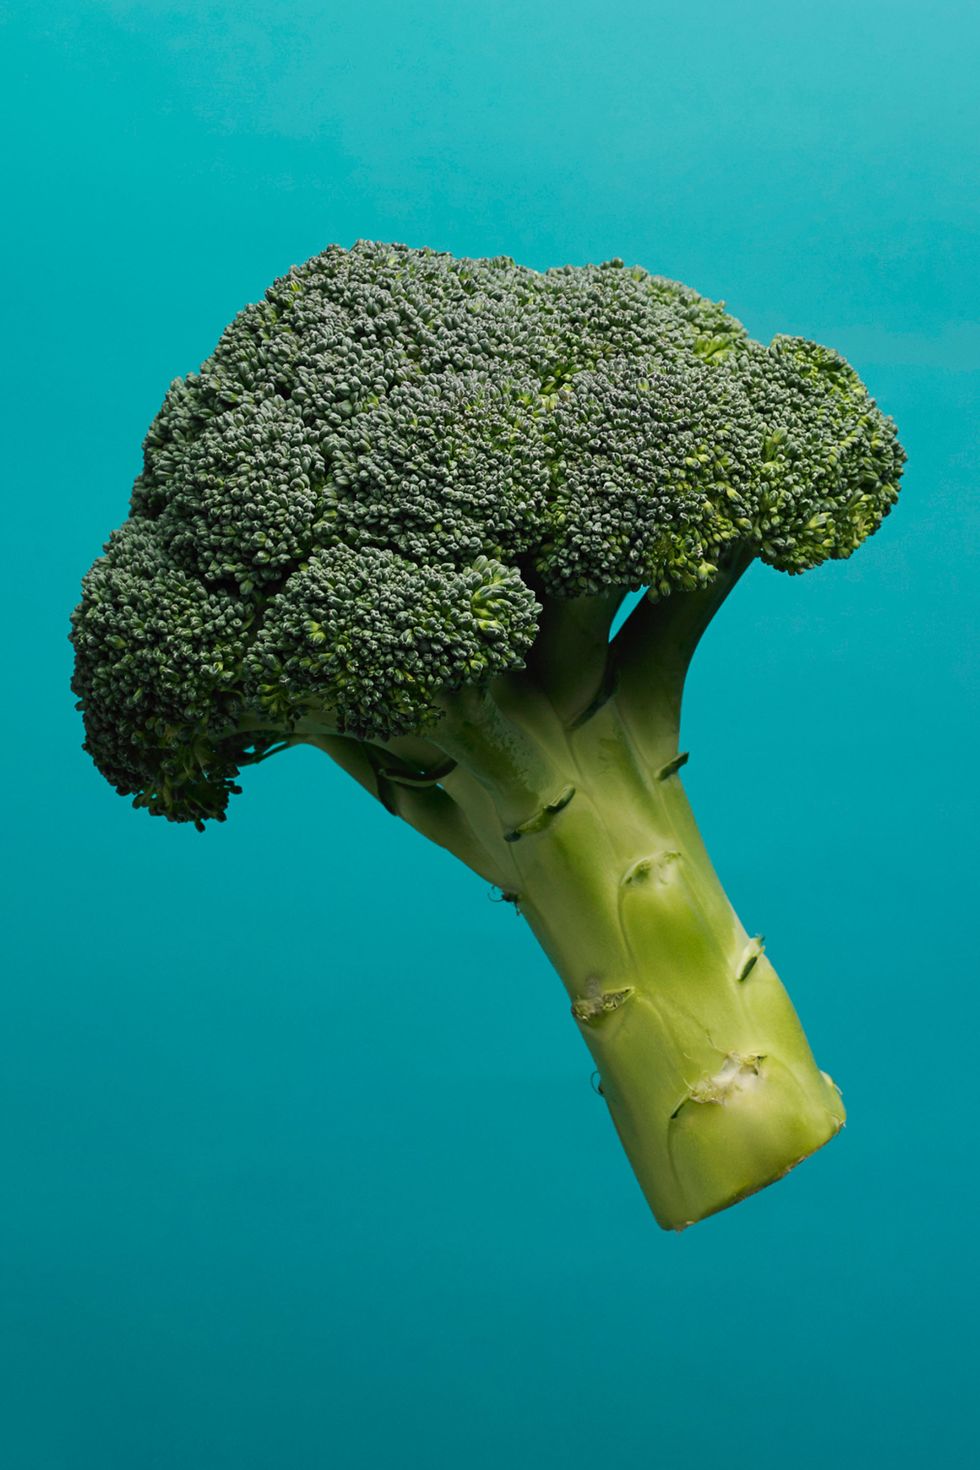 Green, Organism, Broccoli, Vegetable, Leaf vegetable, Cruciferous vegetables, Ingredient, World, Aqua, Teal, 